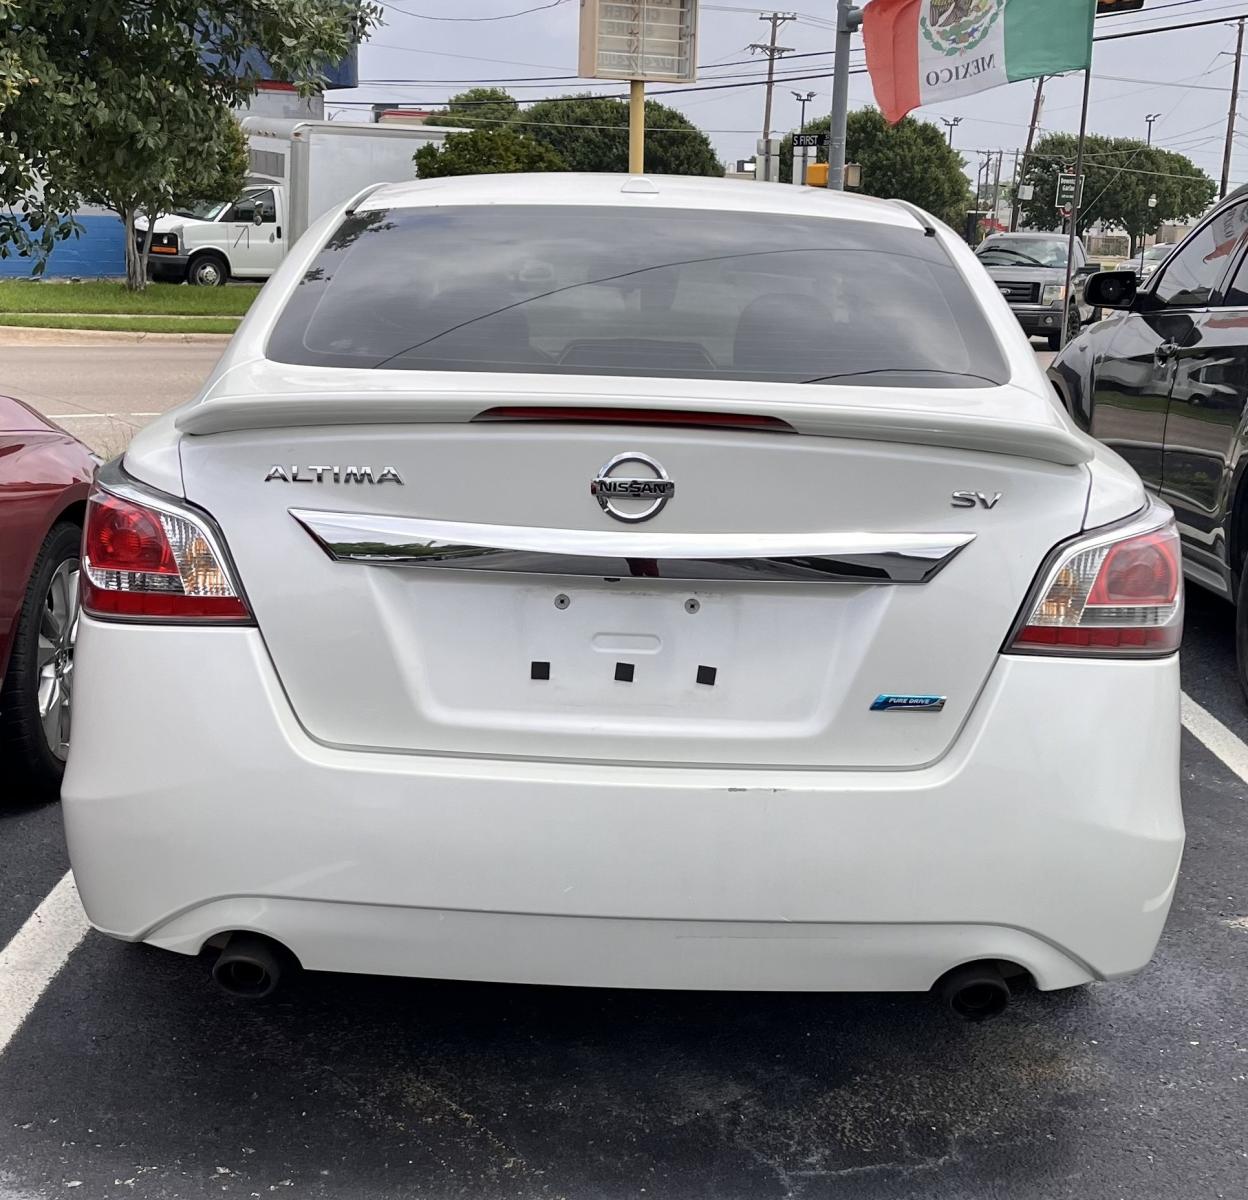 2014 white Nissan Altima (1N4AL3APXEC) , located at 945 E. Jefferson Blvd, Dallas, TX, 75203, (214) 943-7777, 32.752514, -96.811630 - Photo #3